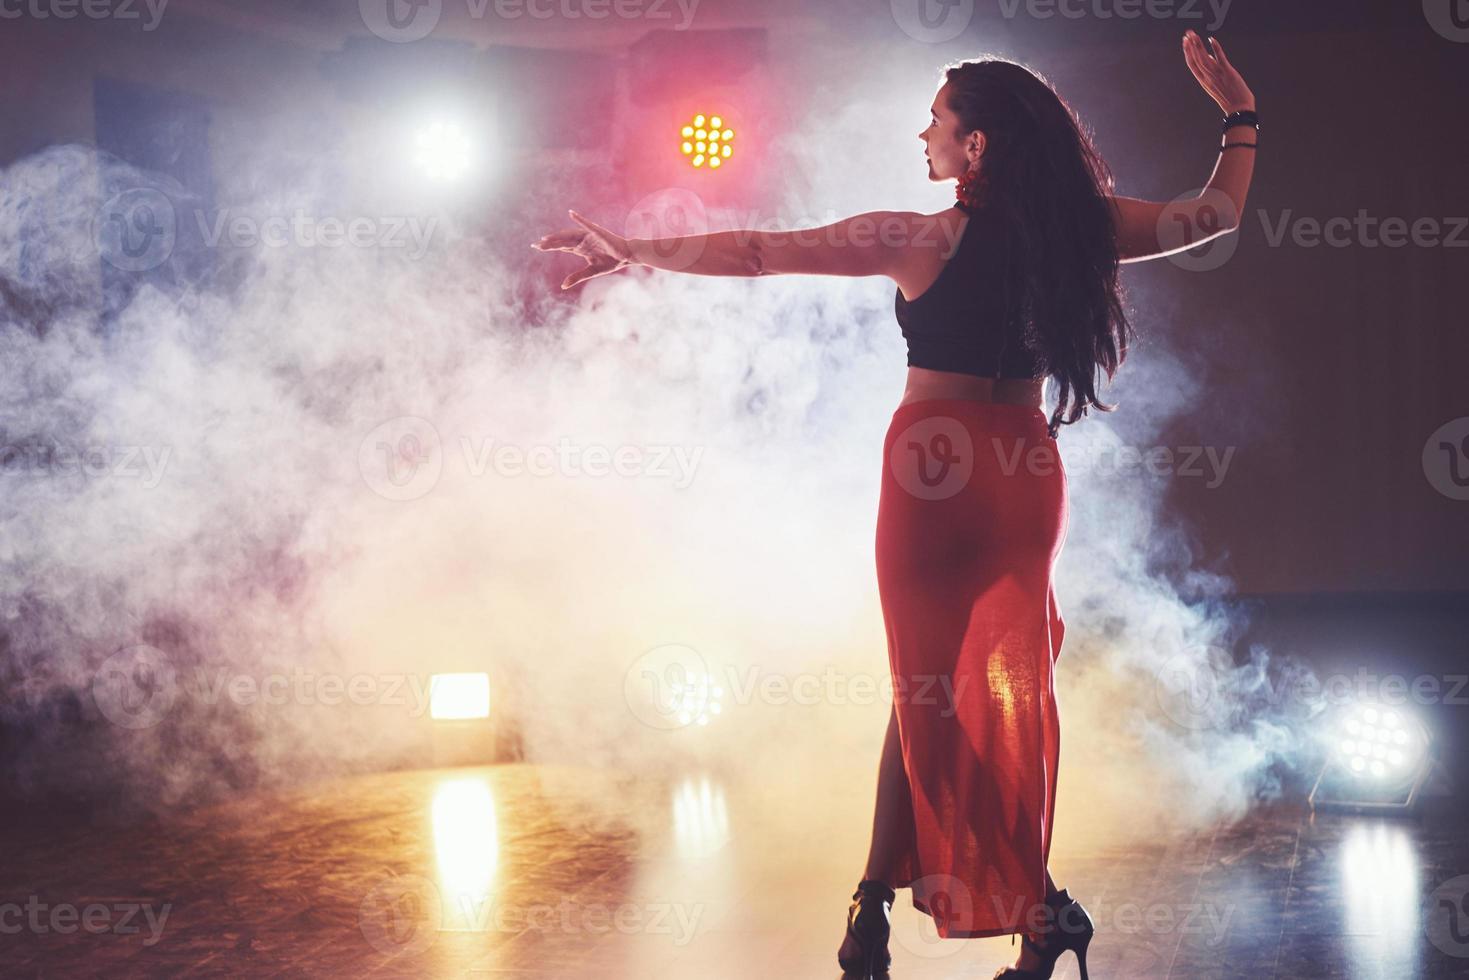 bailarina hábil y hermosa actuando en la habitación oscura bajo la luz y el humo del concierto, interpretando una danza contemporánea artística y emocional foto